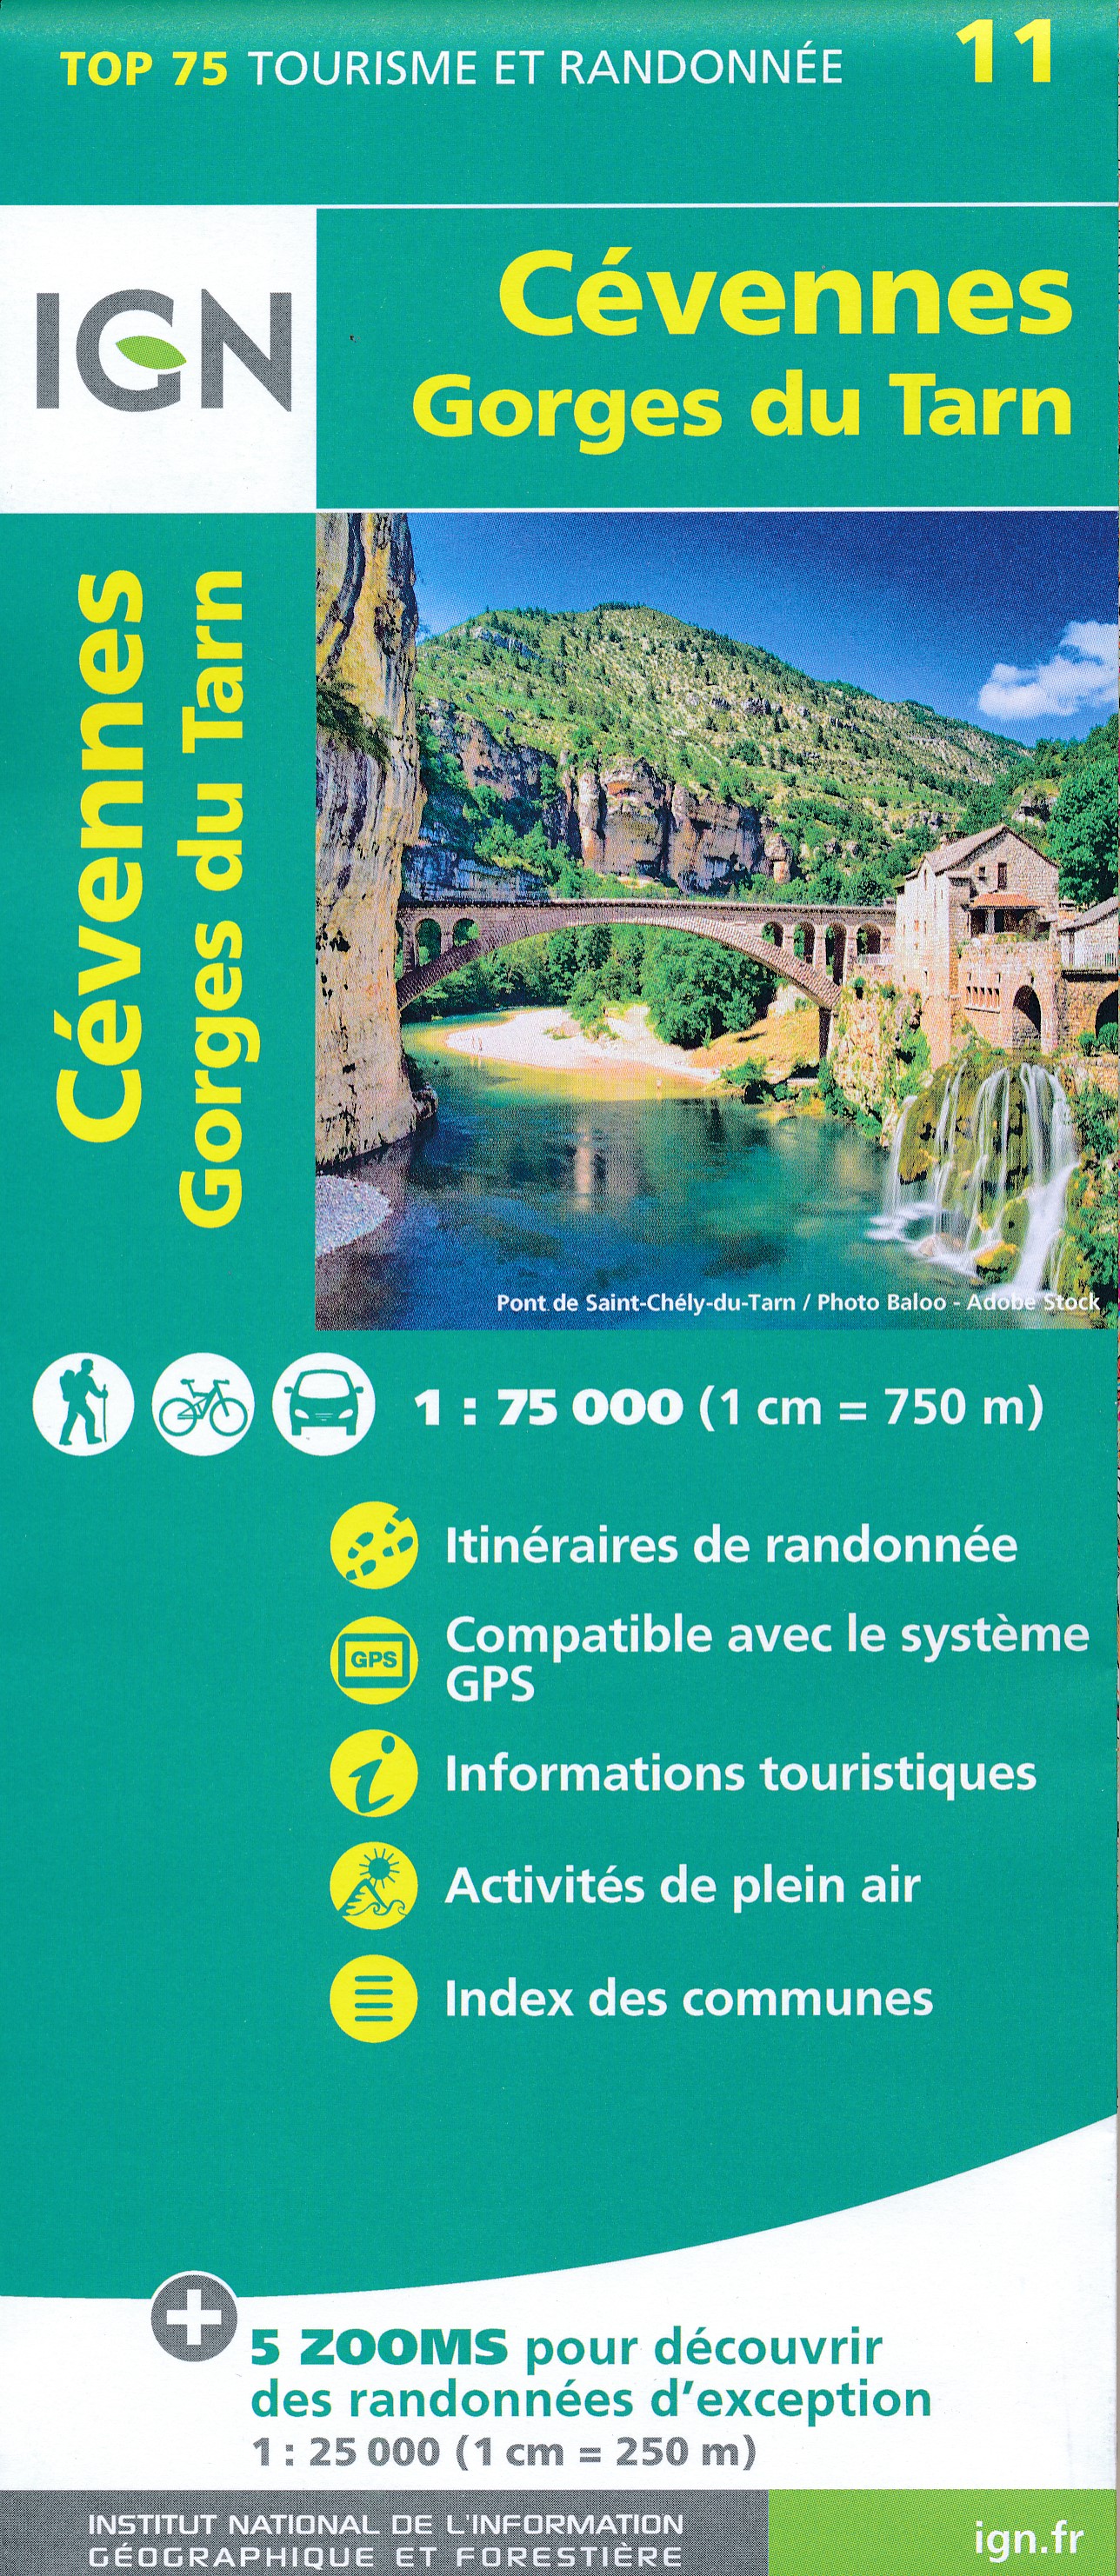 Online bestellen: Wandelkaart - Fietskaart 11 Cevennes PRN - Gorges du Tarn | IGN - Institut Géographique National